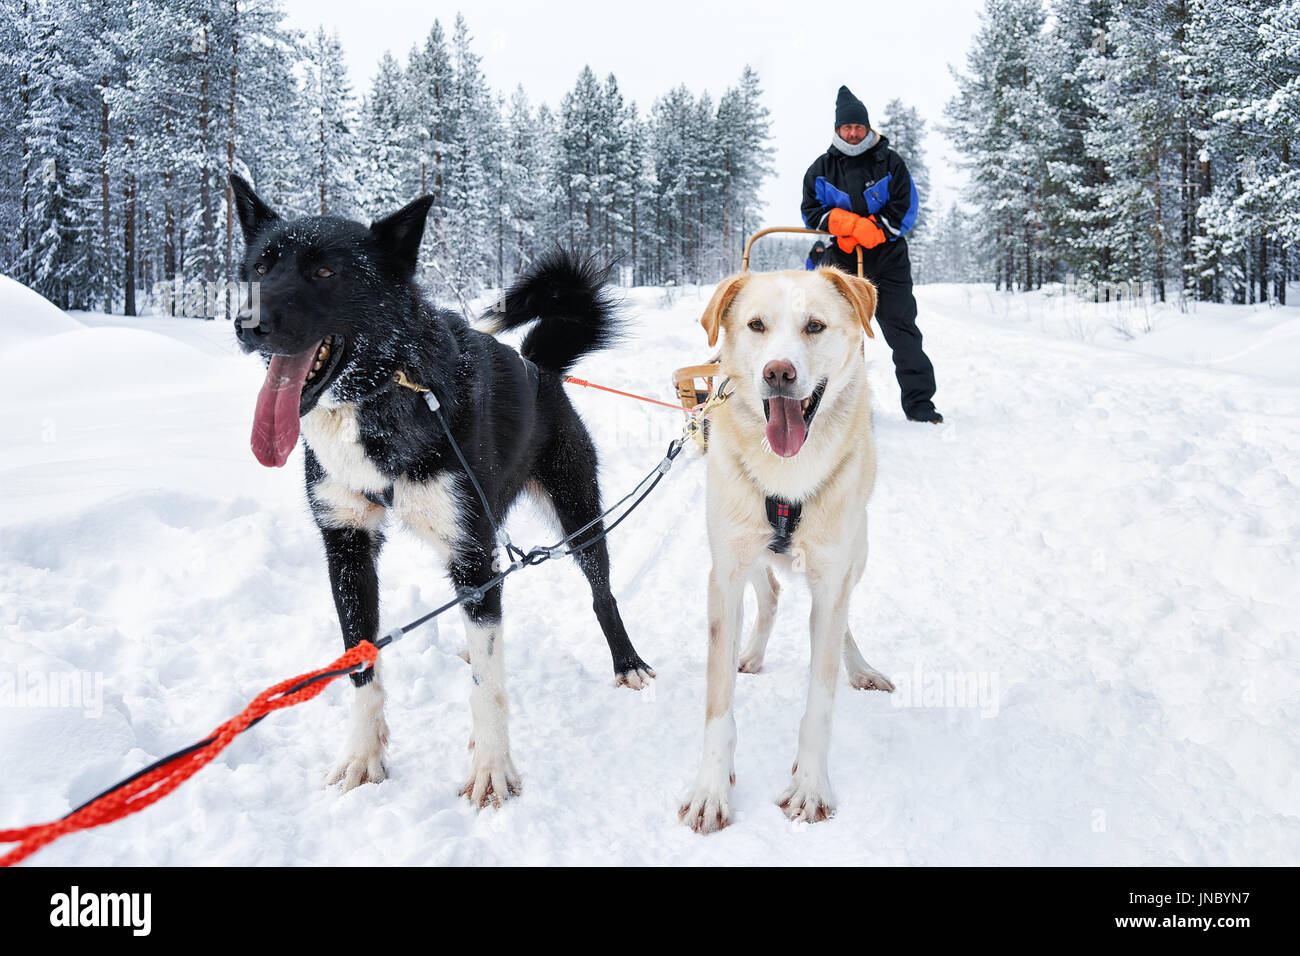 Rovaniemi, Finlande - mars 3, 2017 : l'homme sur les chiens husky sleigh en hiver forêt, Rovaniemi, Laponie, Finlande du Nord Banque D'Images